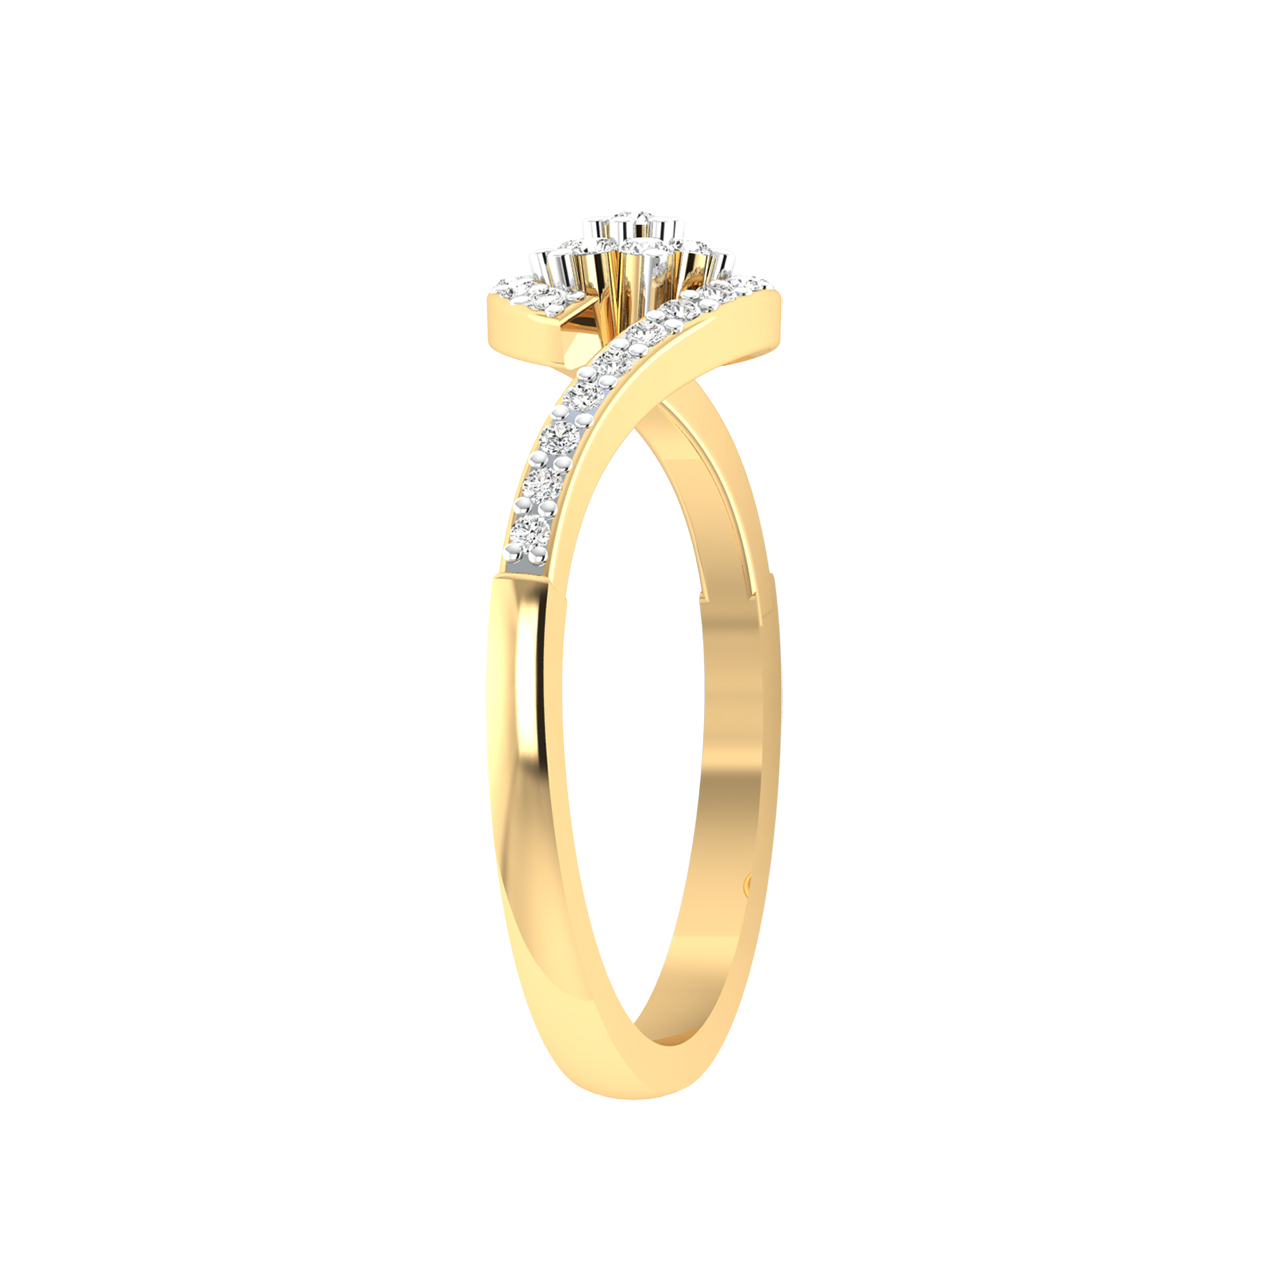 Reina Round Diamond Engagement Ring